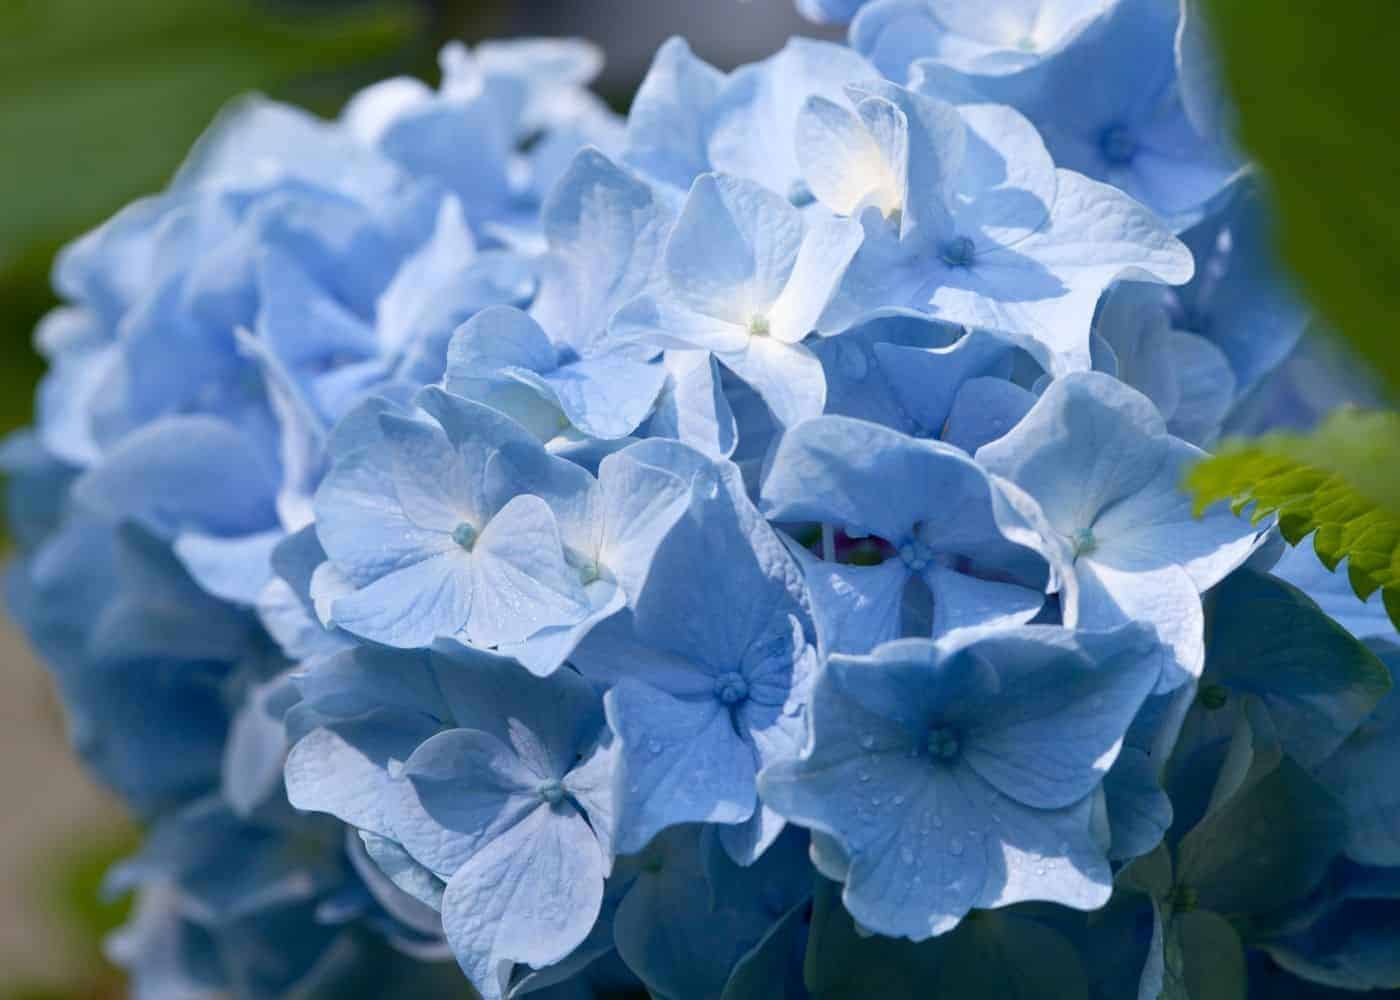 Blue endless summer hydrangea flower